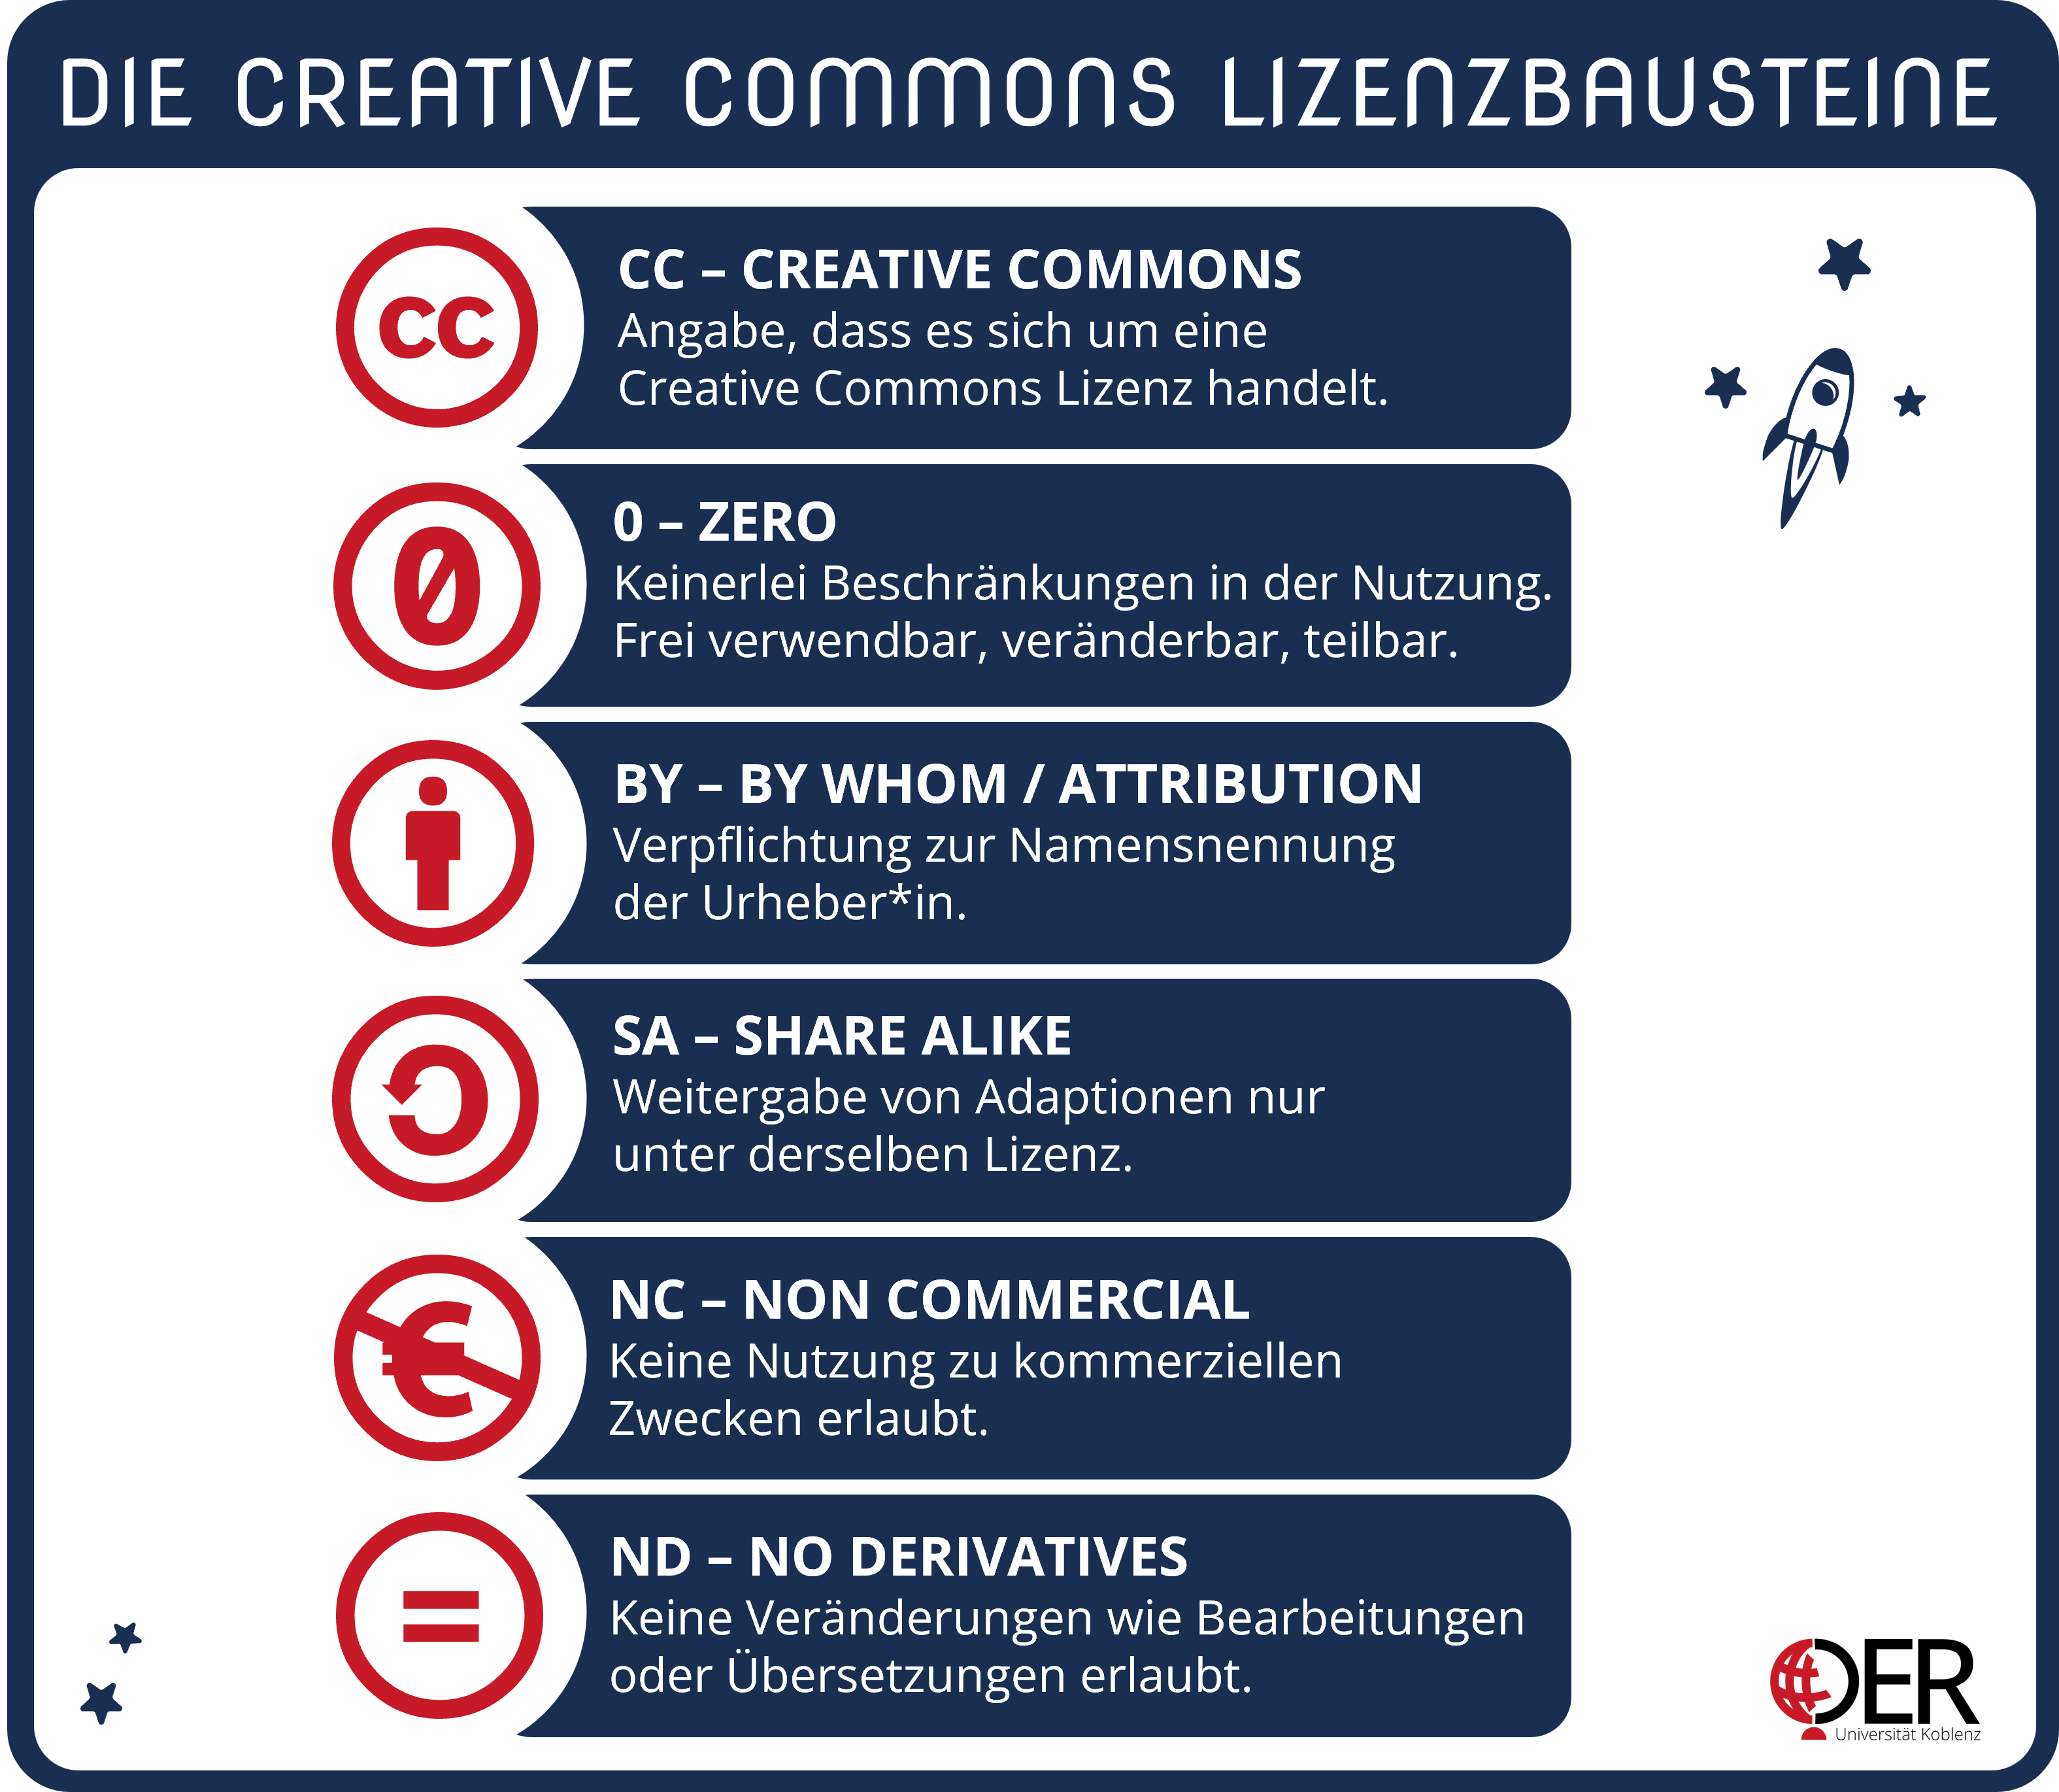 Die Creative Commons Lizenzbausteine CC, ZERO, BY, SA, NC und ND und ihre Bedeutungen